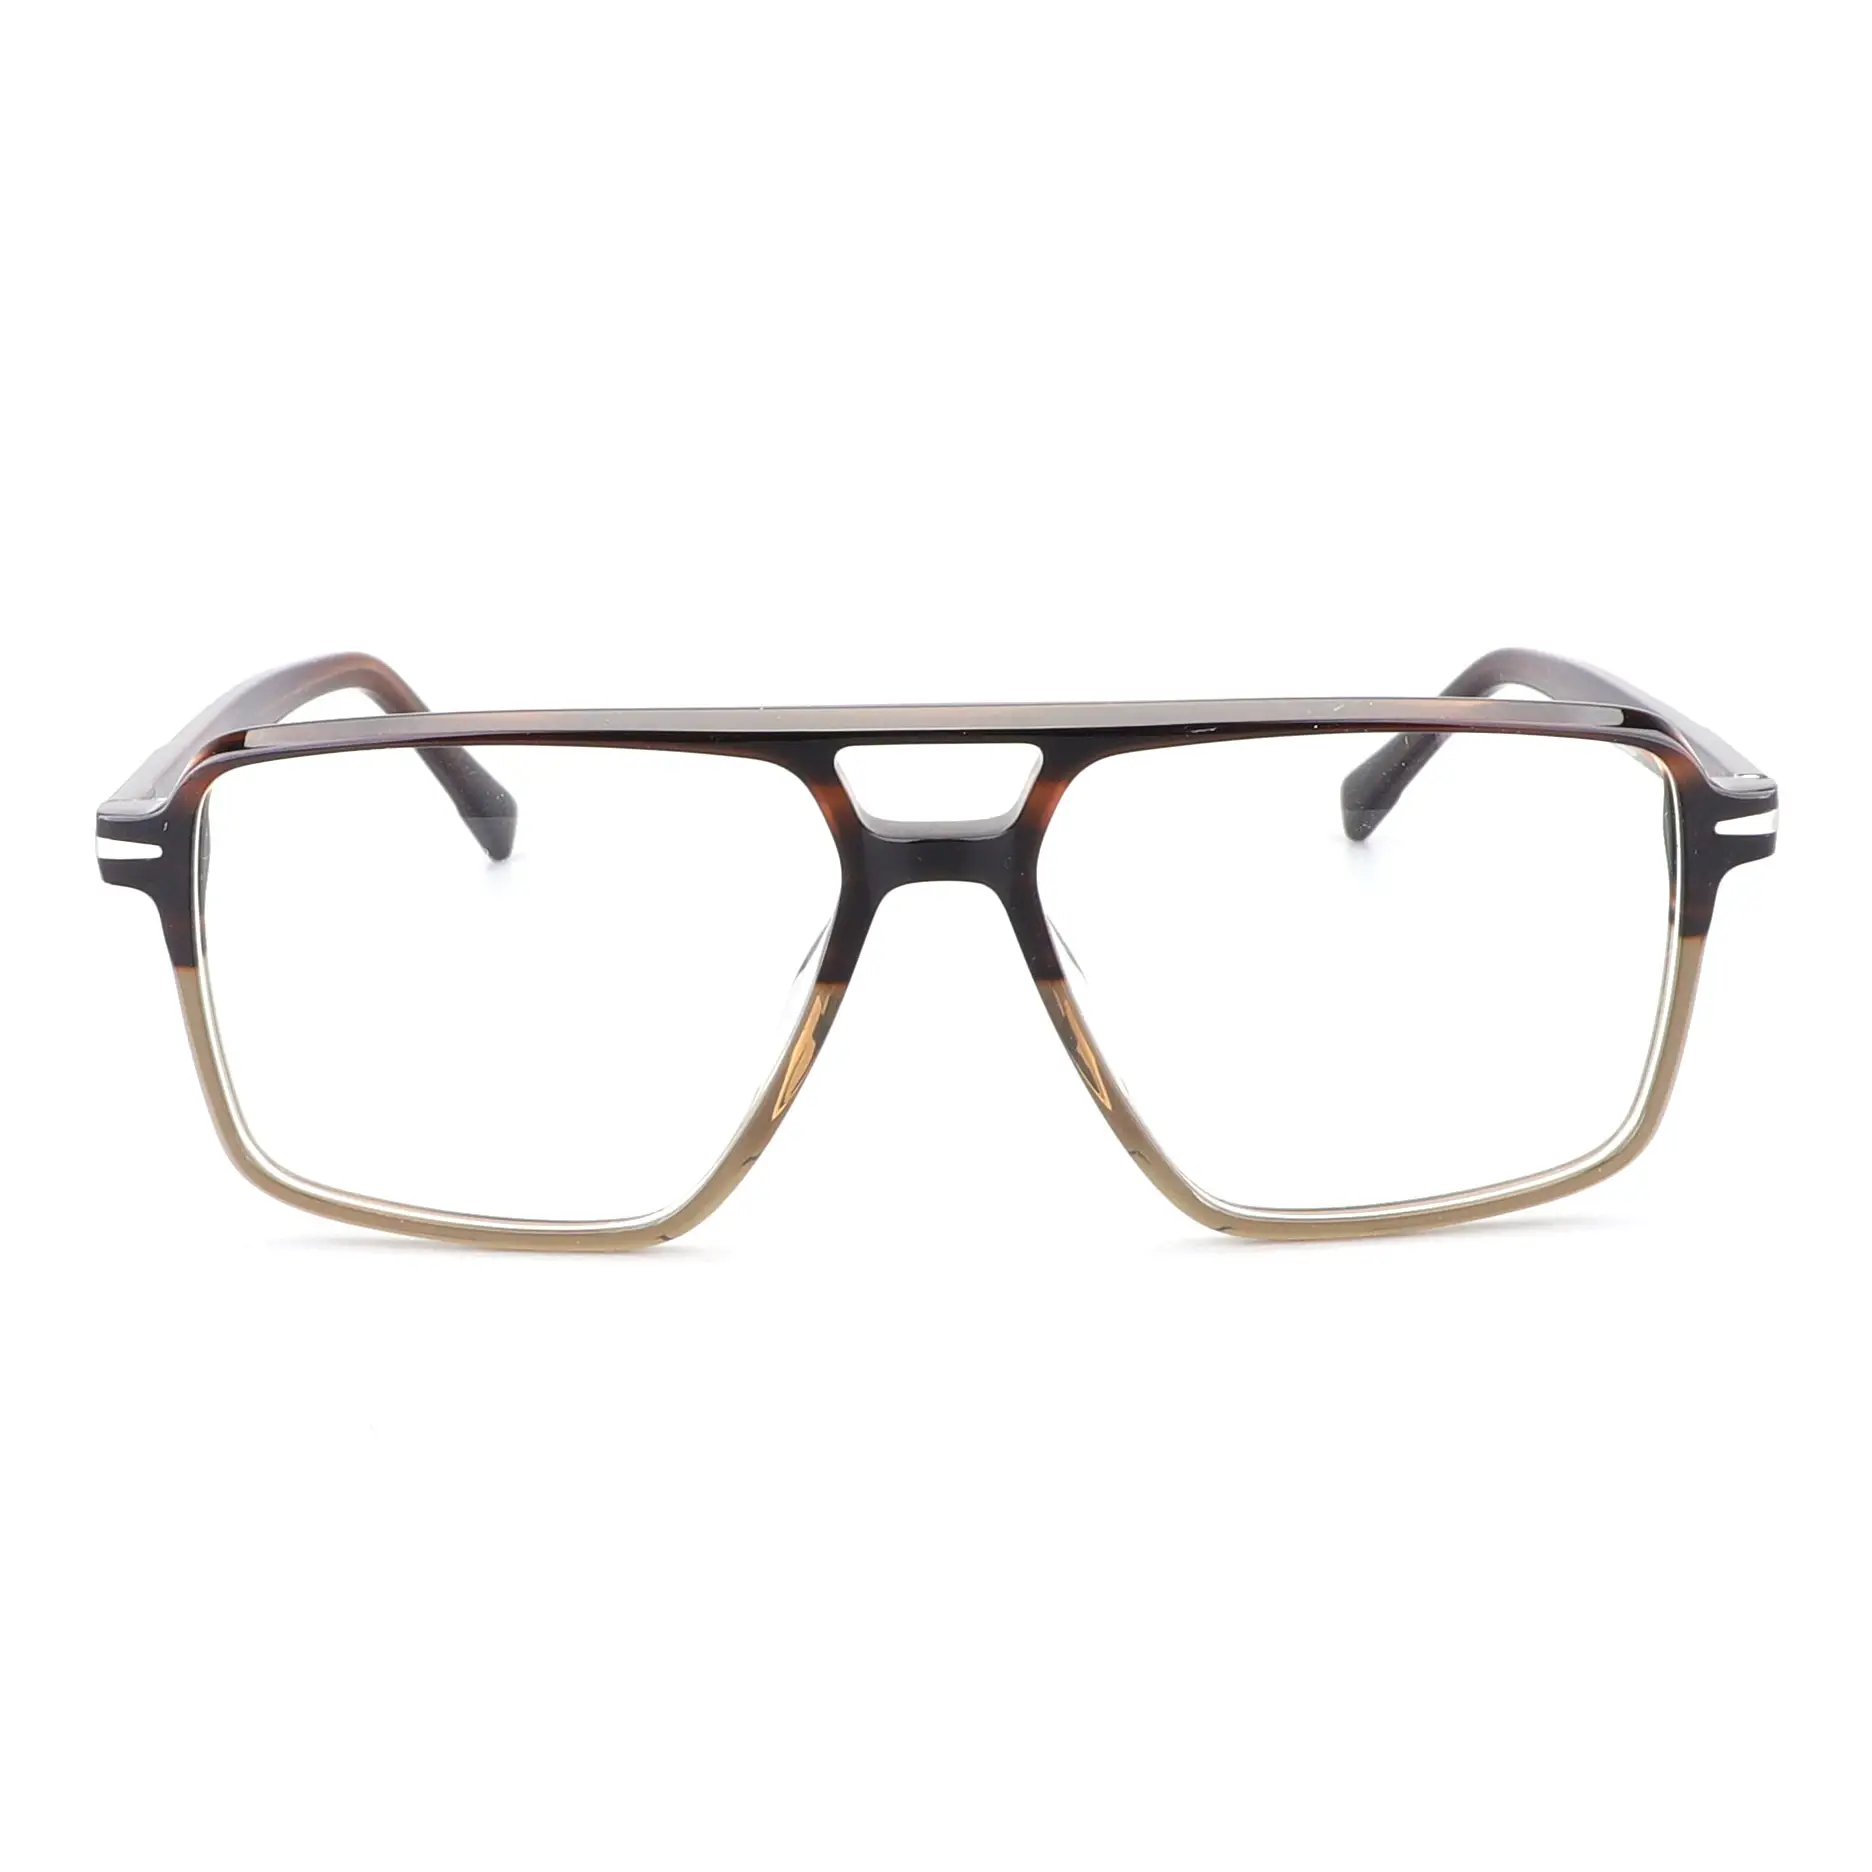 Neueste mehrfarbige Acetat-Brille Mode Brille handgefertigt Viereckig Unisex optische Brillenrahmen